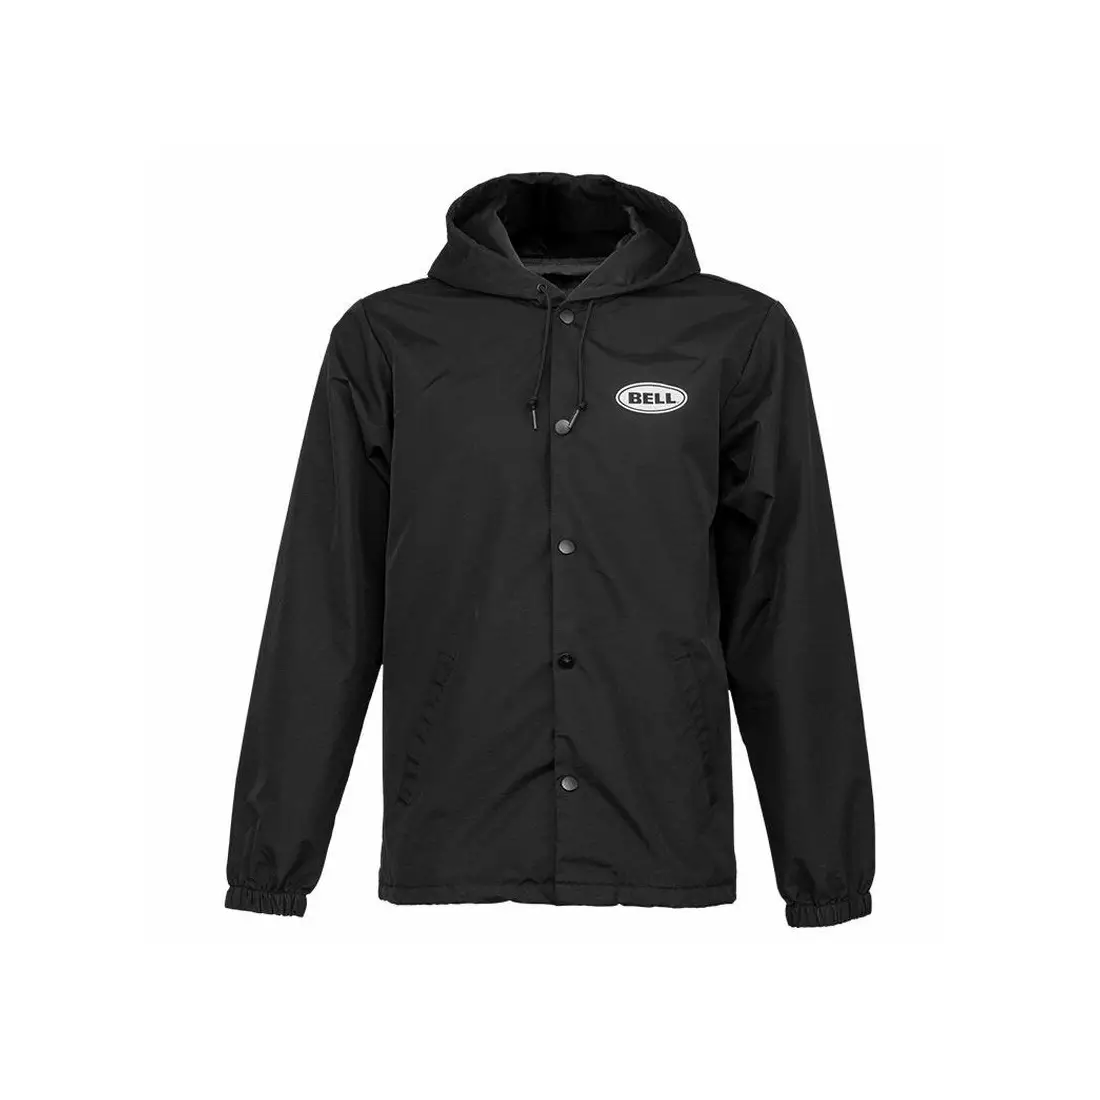 BELL men's windbreaker jacket COACH JACKET black BEL-7107238